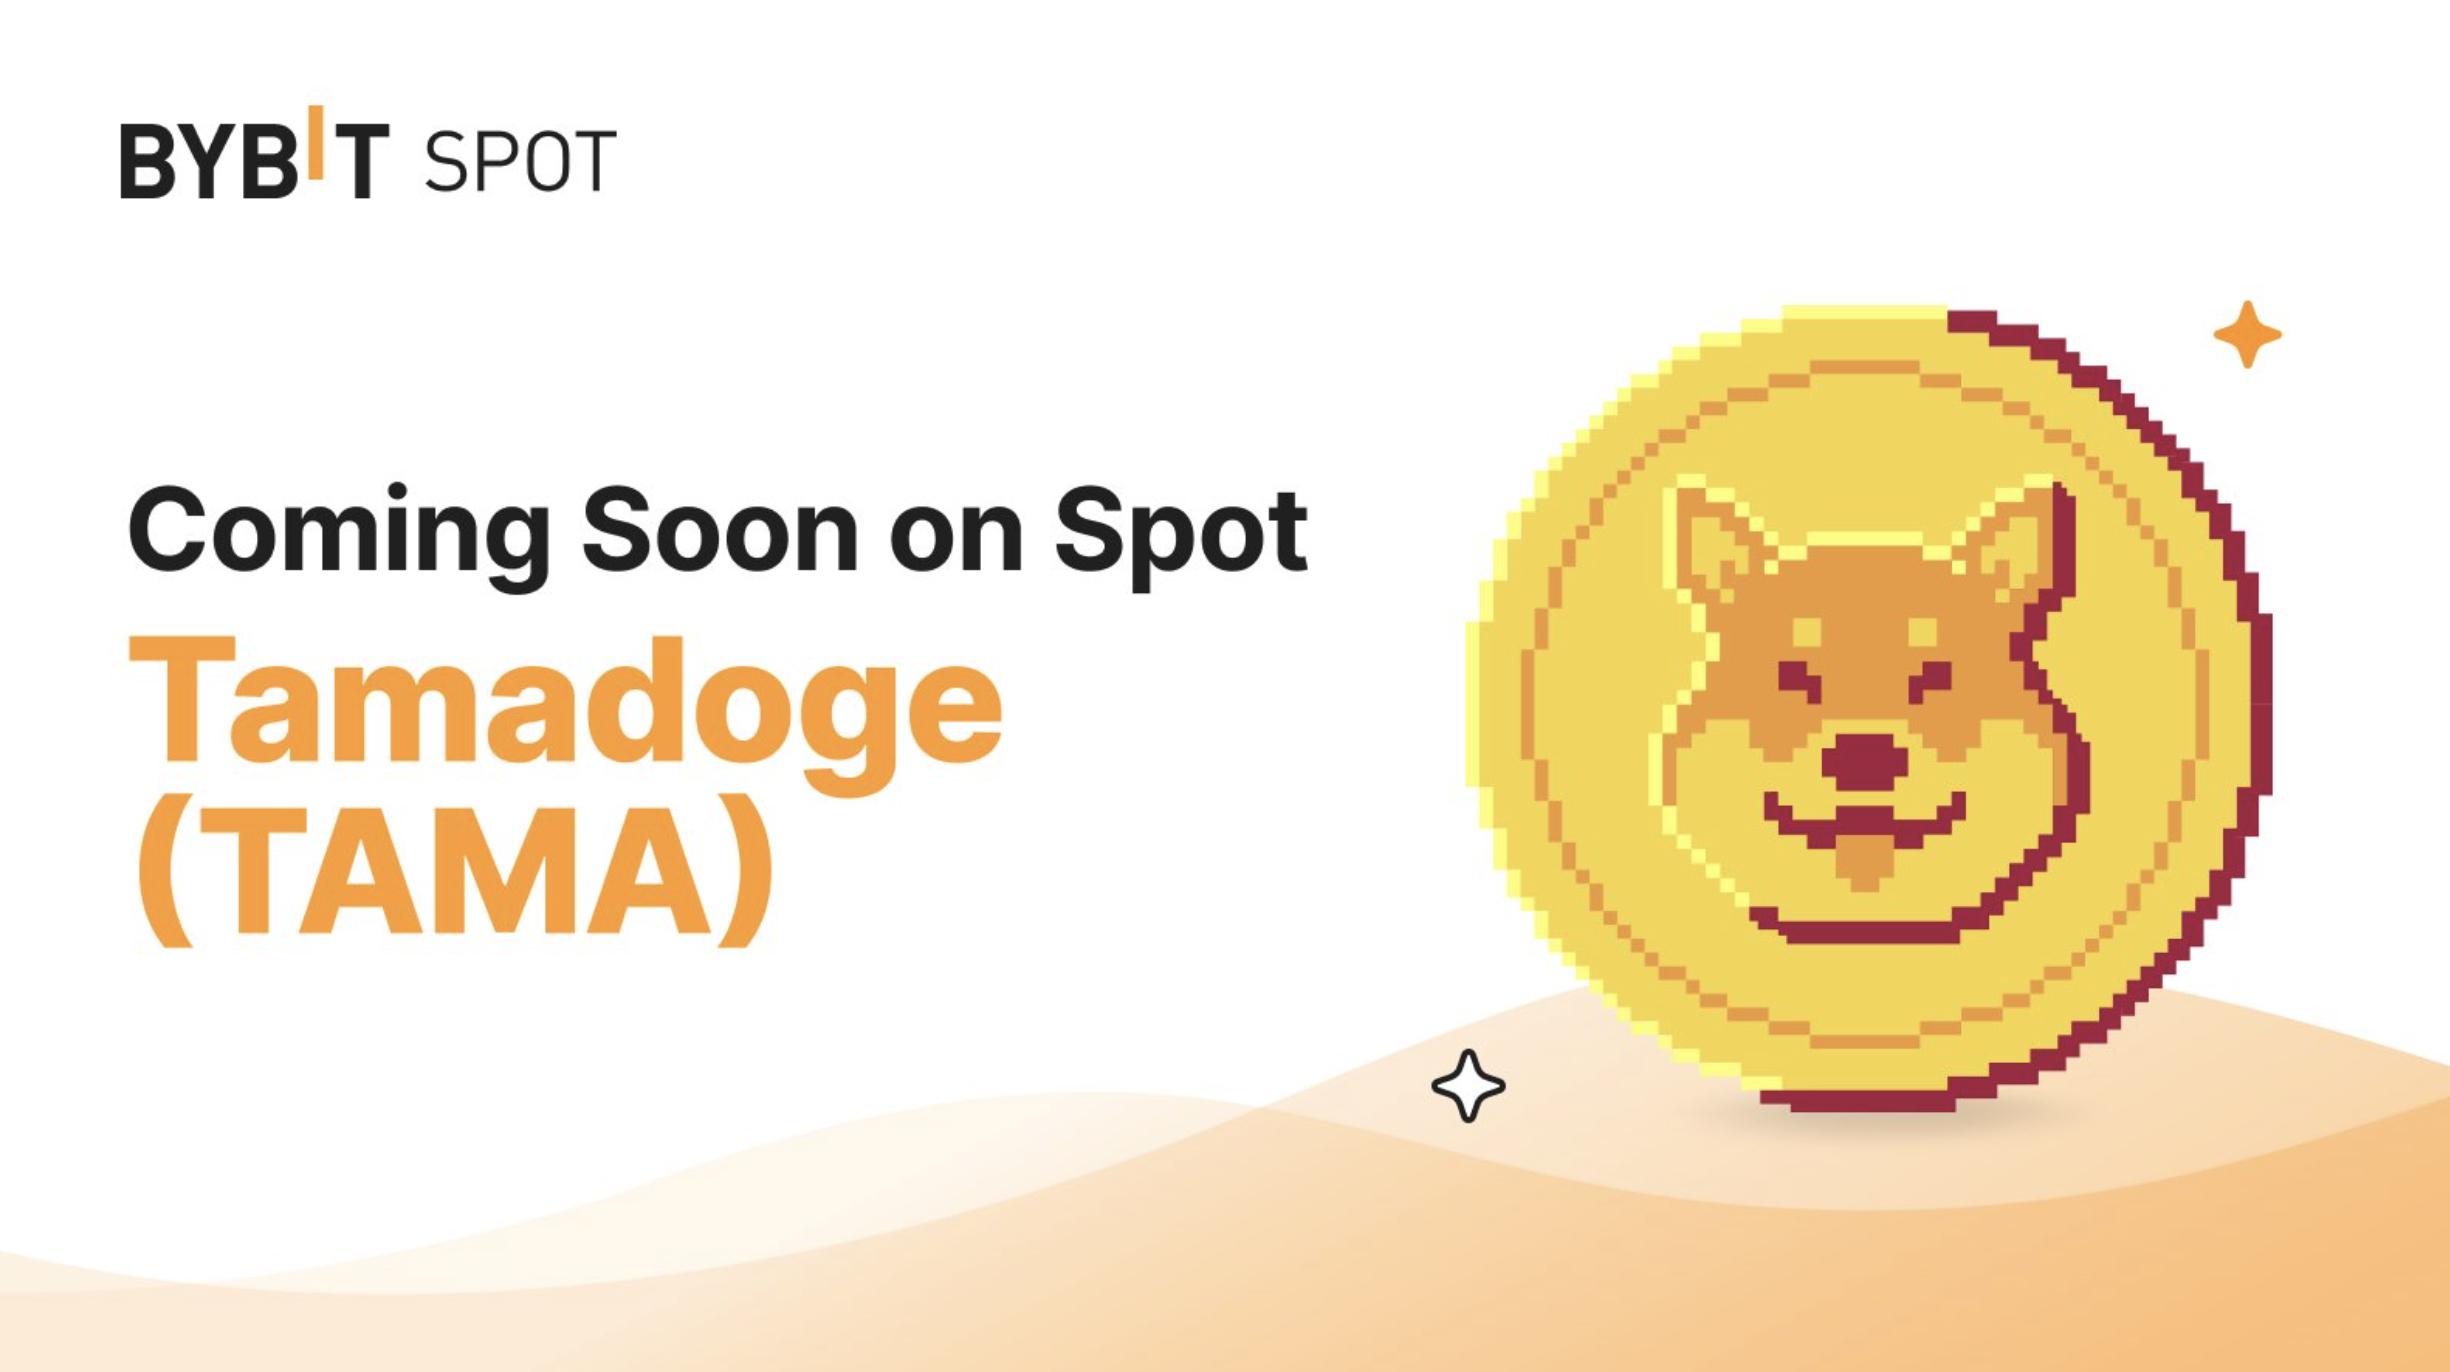 Tamadoge Koers Verwachting - Gaat TAMA x10 na Aankondiging Listing Top Crypto Exchange